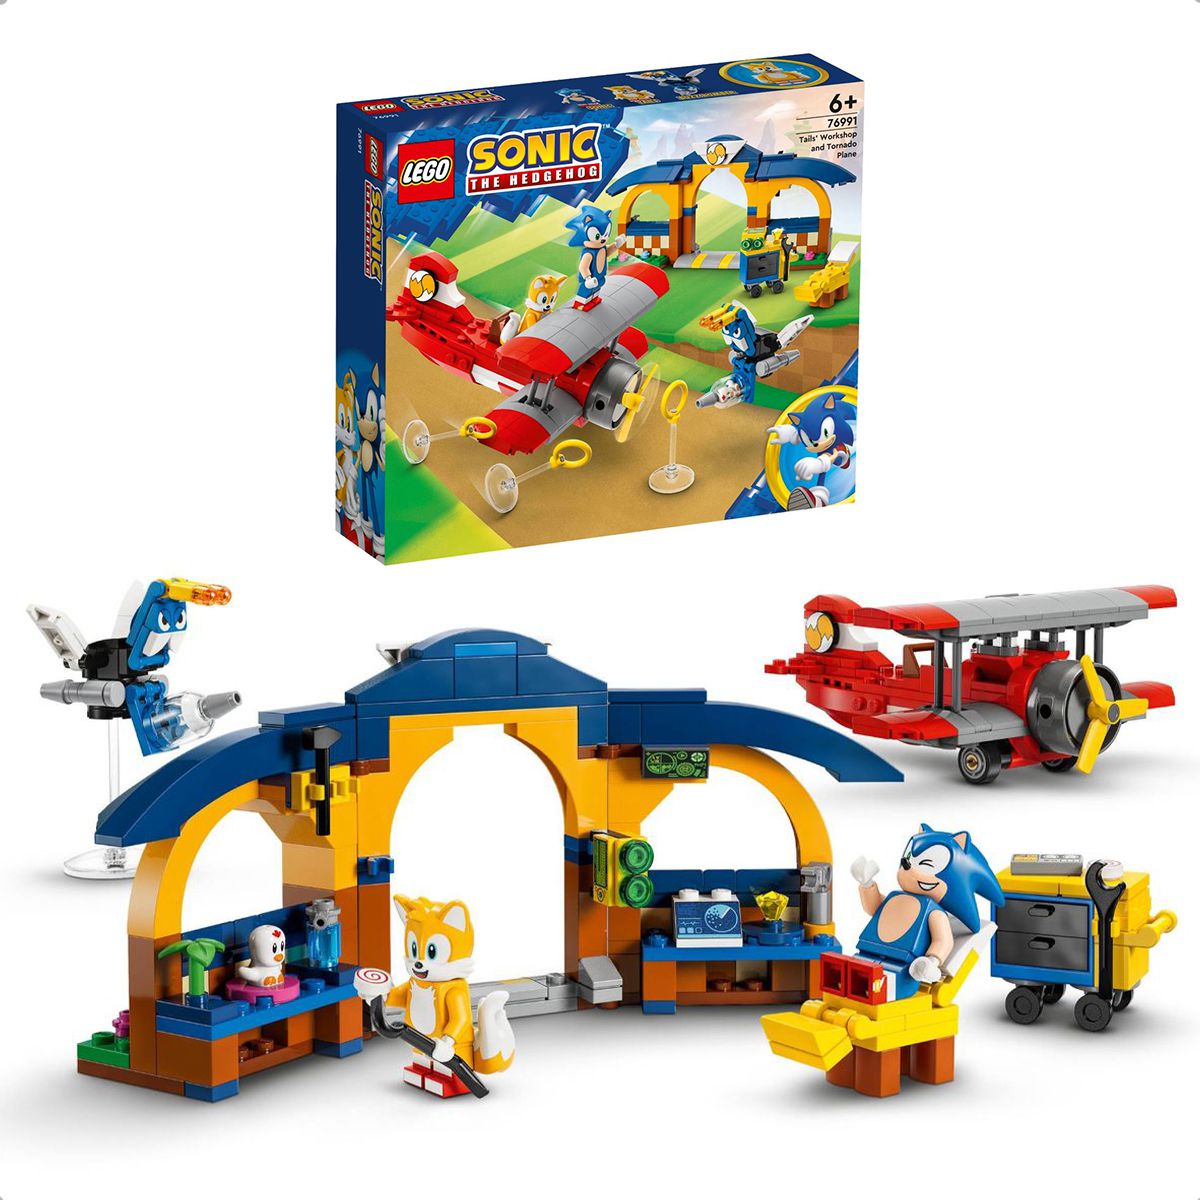 Blocos de Montar - Oficina do Tails e Aviao Tornado - Sonic LEGO DO BRASIL